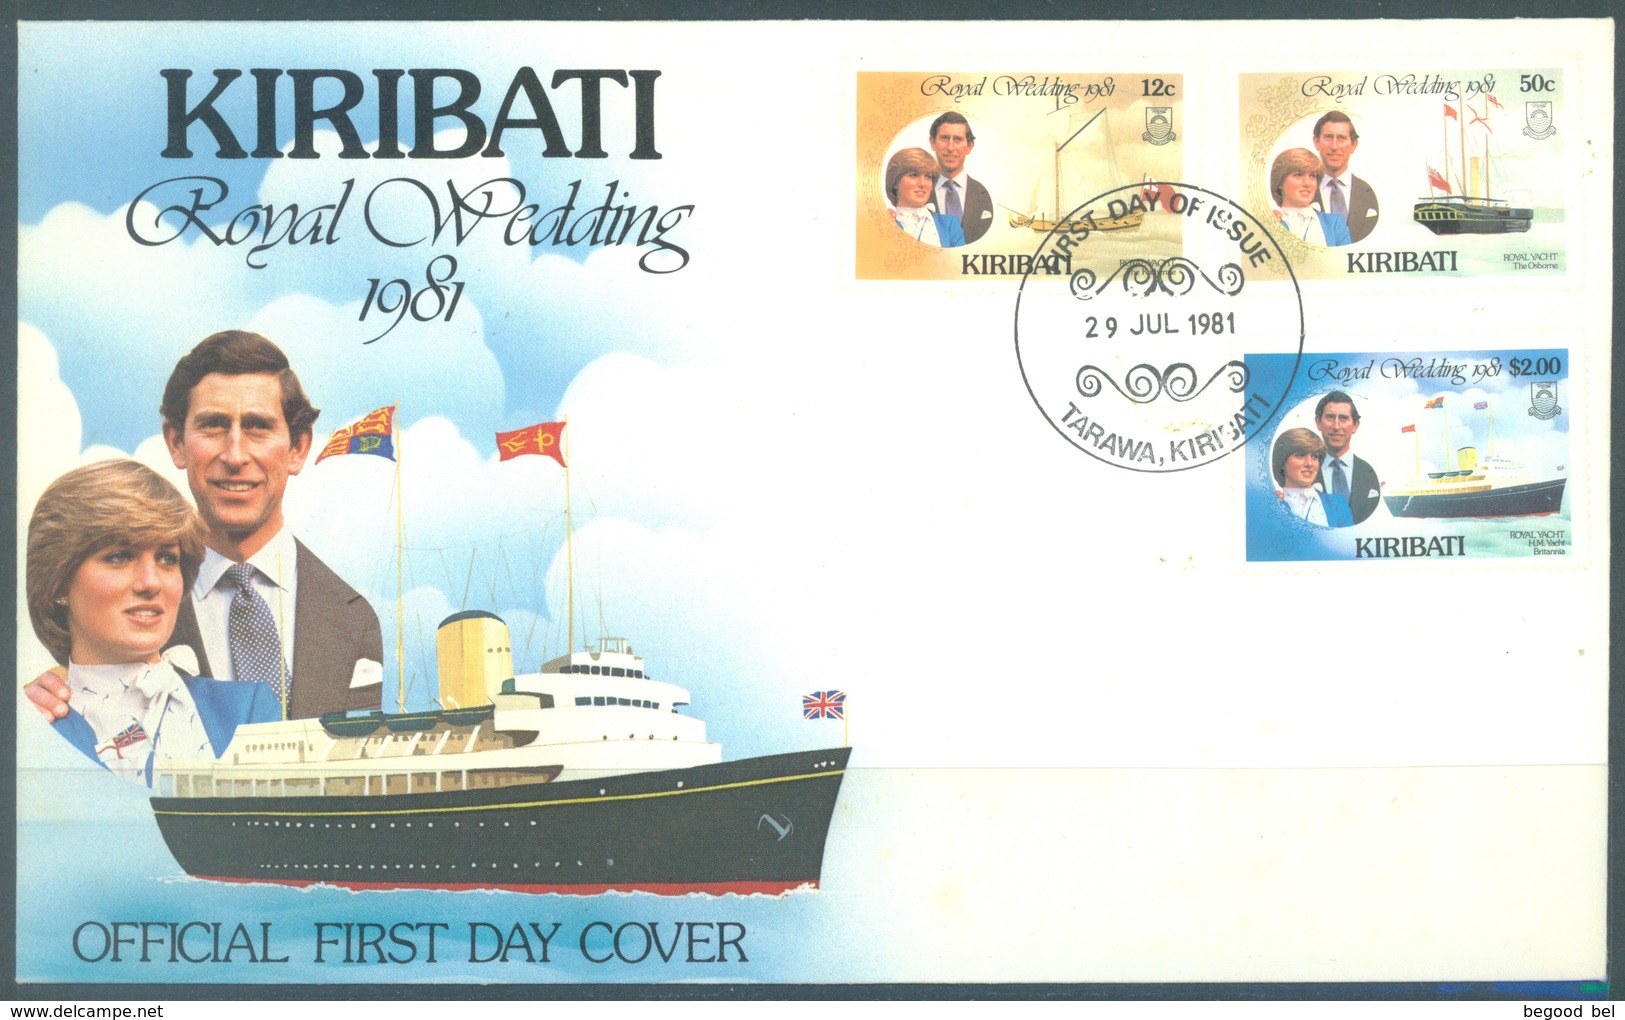 KIRIBATI - 29.7.1981 - FDC - ROYAL WEDDING  - Mi 371 373 375 Yv 50 52 54 - Lot 16796 - Kiribati (1979-...)